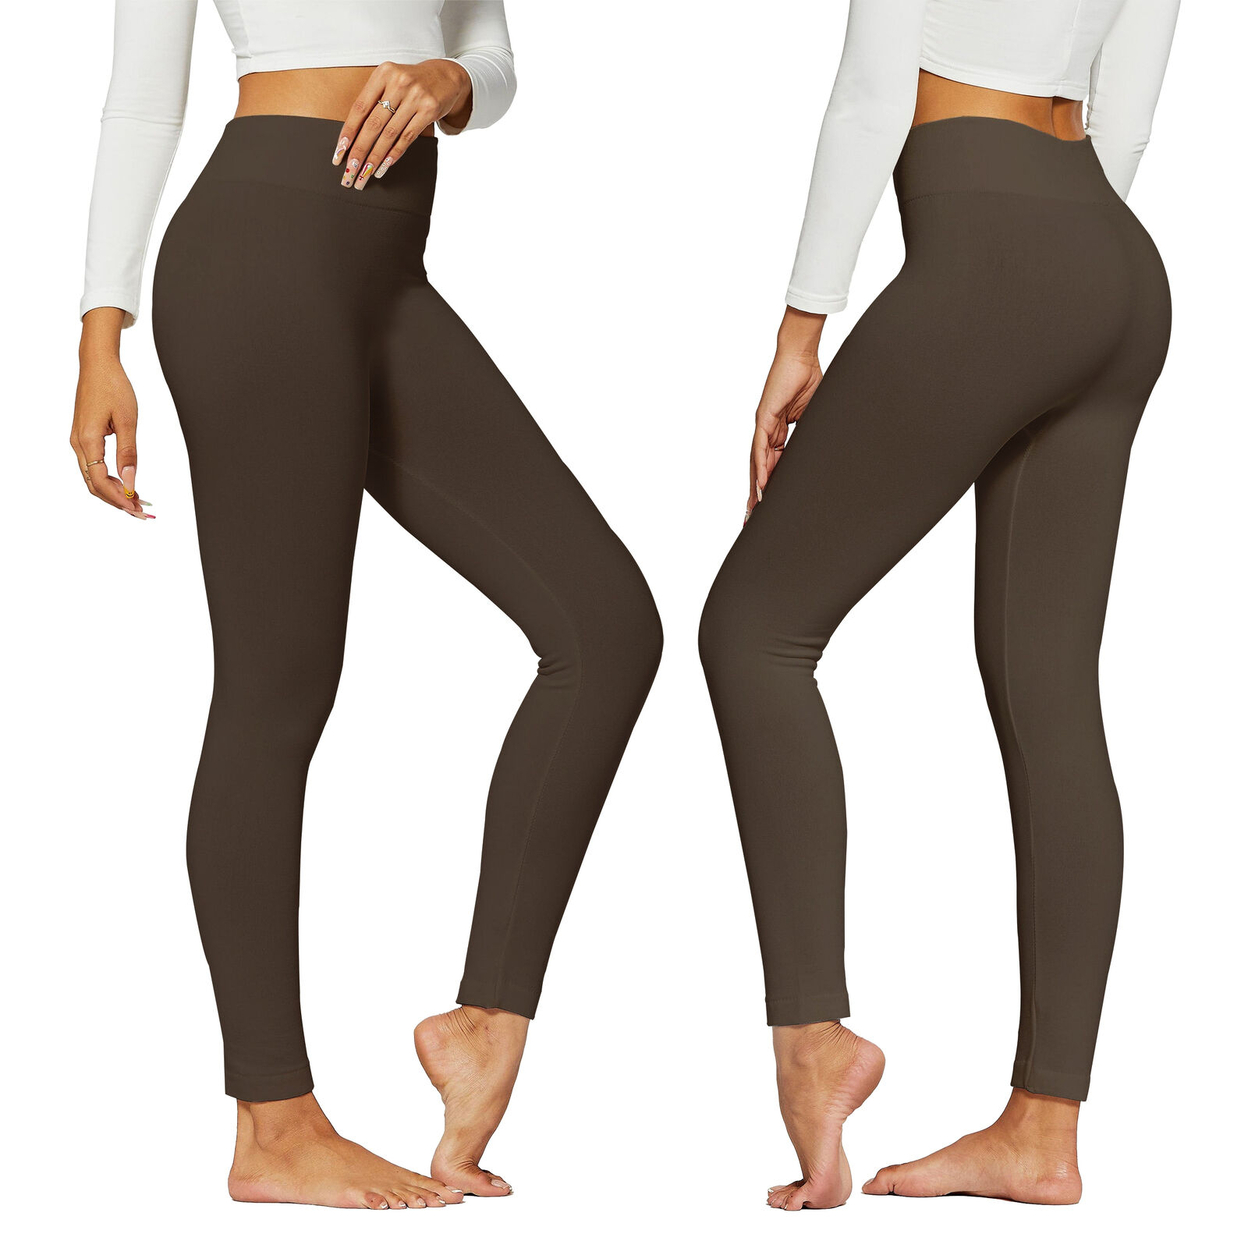 2-Pack: Women's Winter Warm High-Waist Soft Fleece Lined Leggings - Black & Brown, 4X